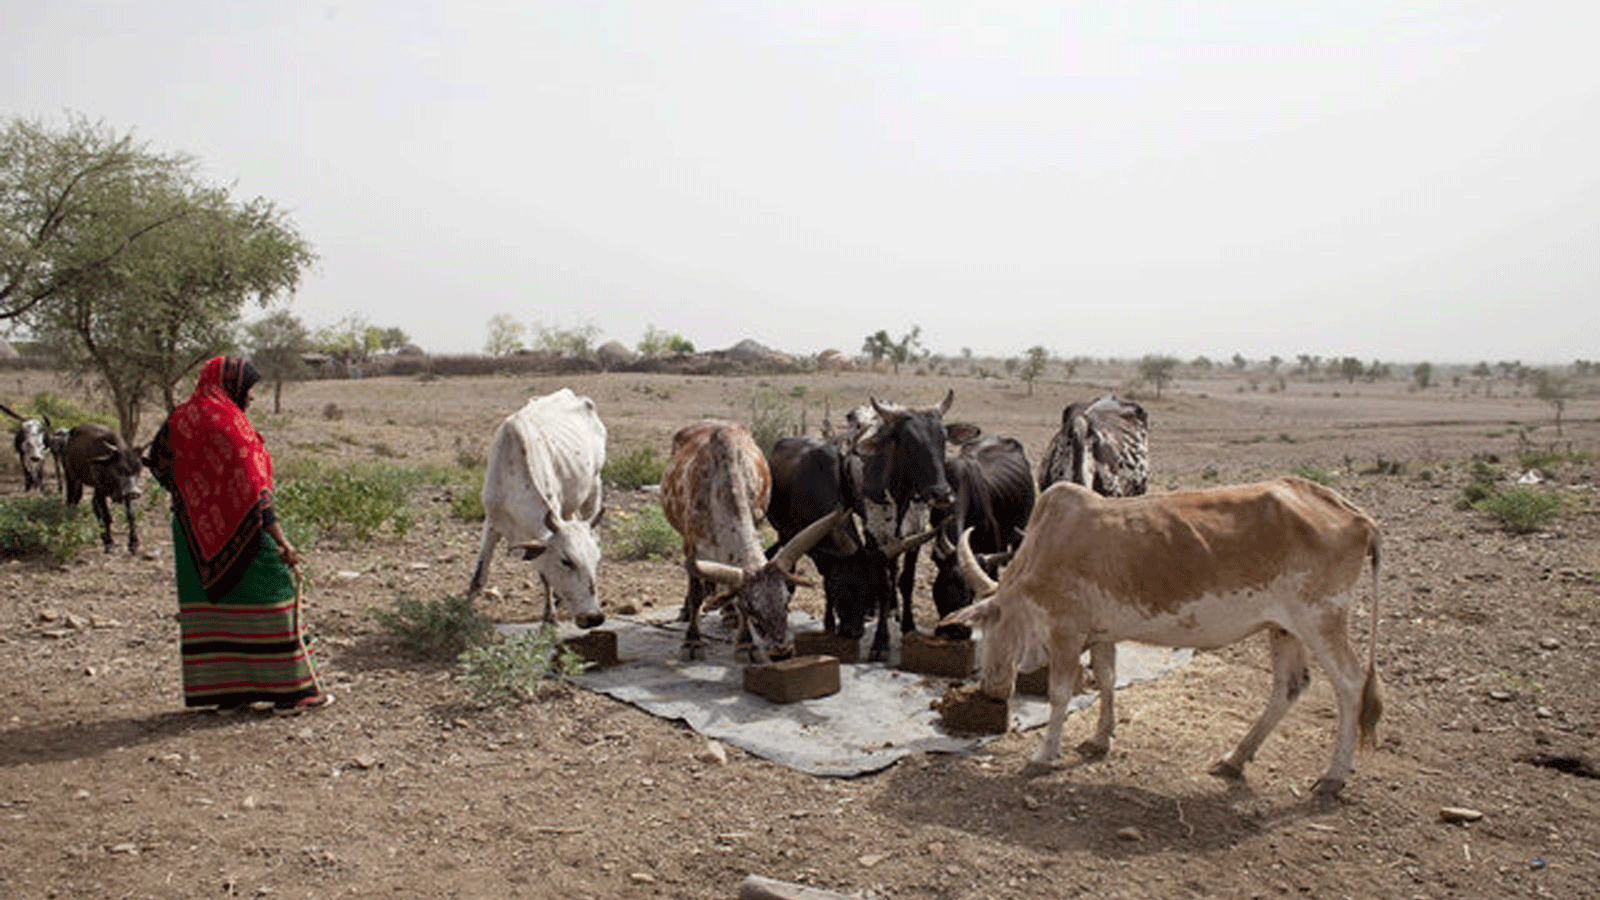 الحيوانات تعاني الجوع والعطش خلال الجفاف في أفريقيا